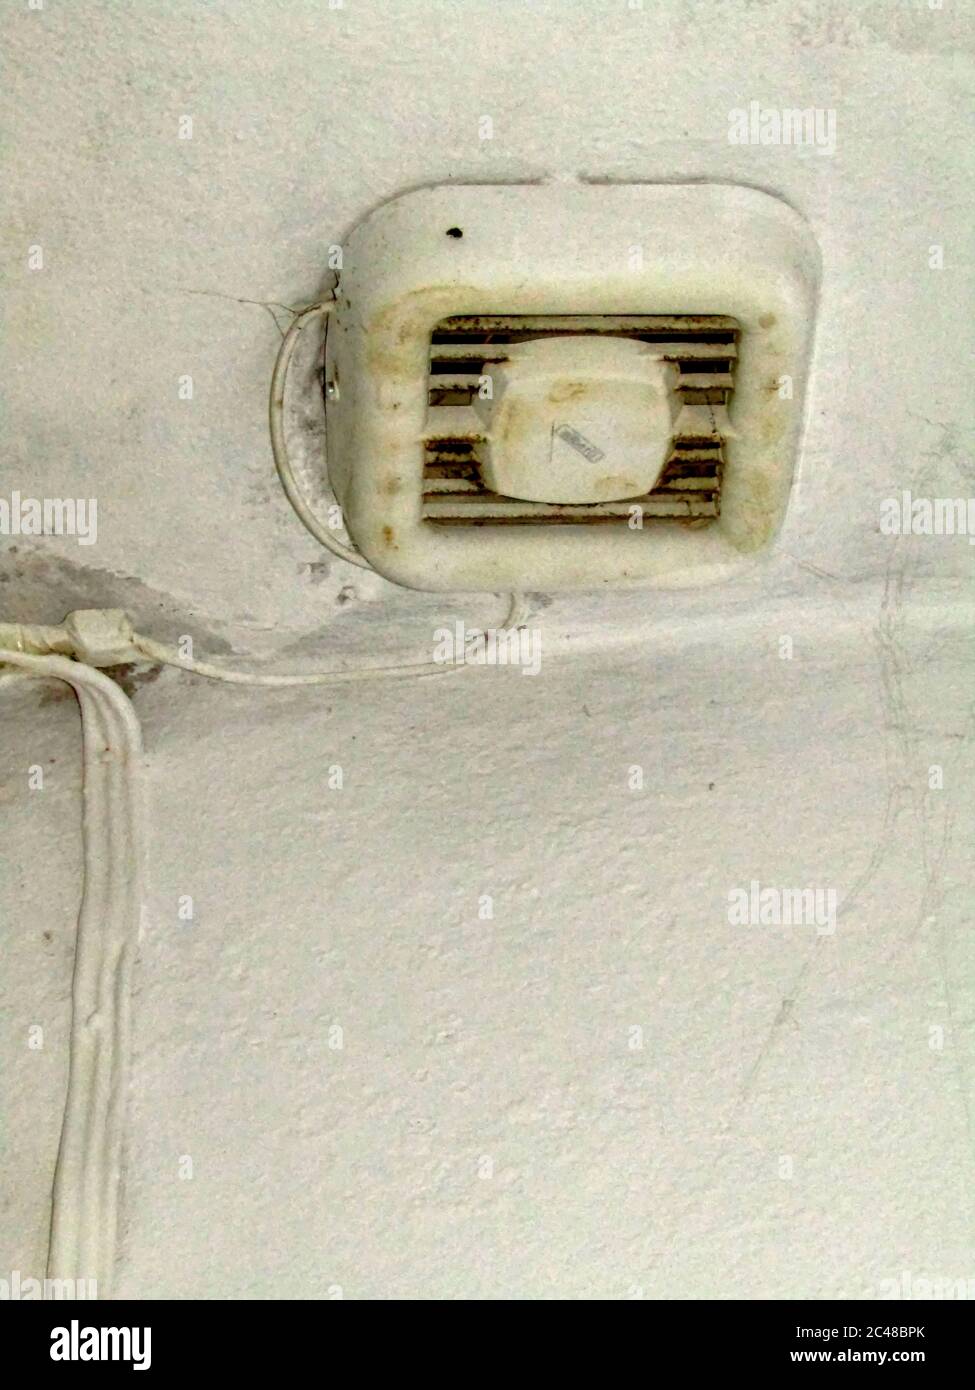 Extractor eléctrico Ventilador en un techo de baño, Creta, Grecia Foto de stock